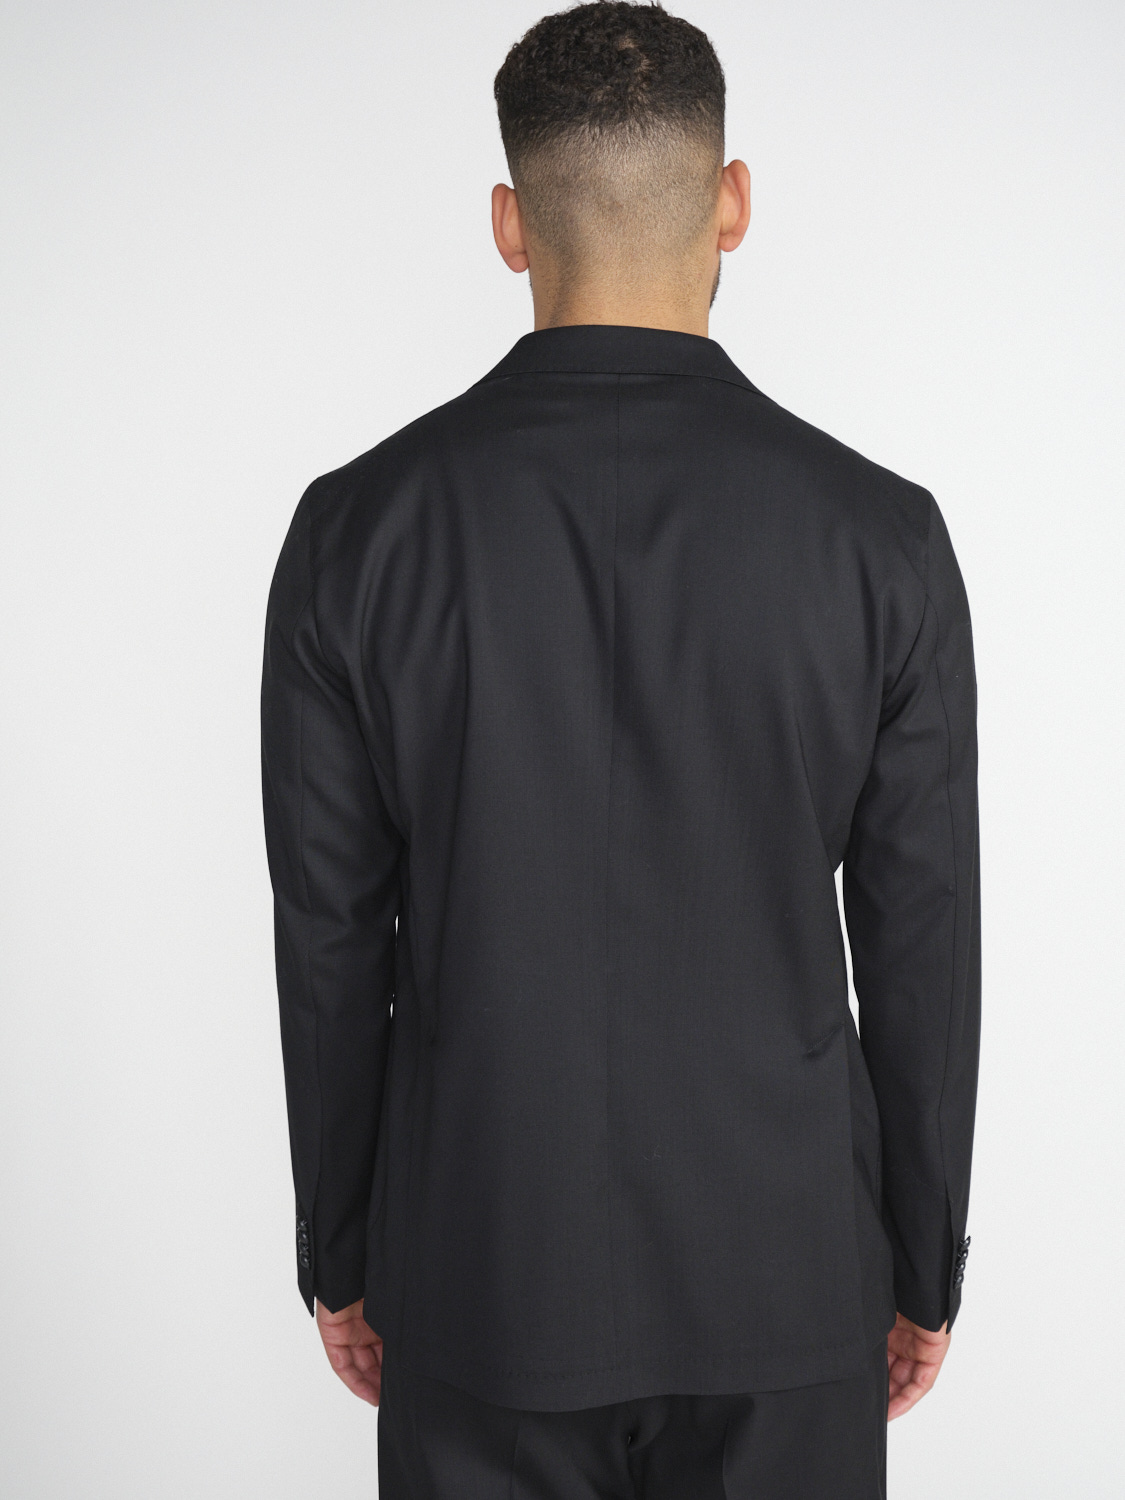 Tagliatore Lässiger Anzug aus Schurwolle   schwarz 52